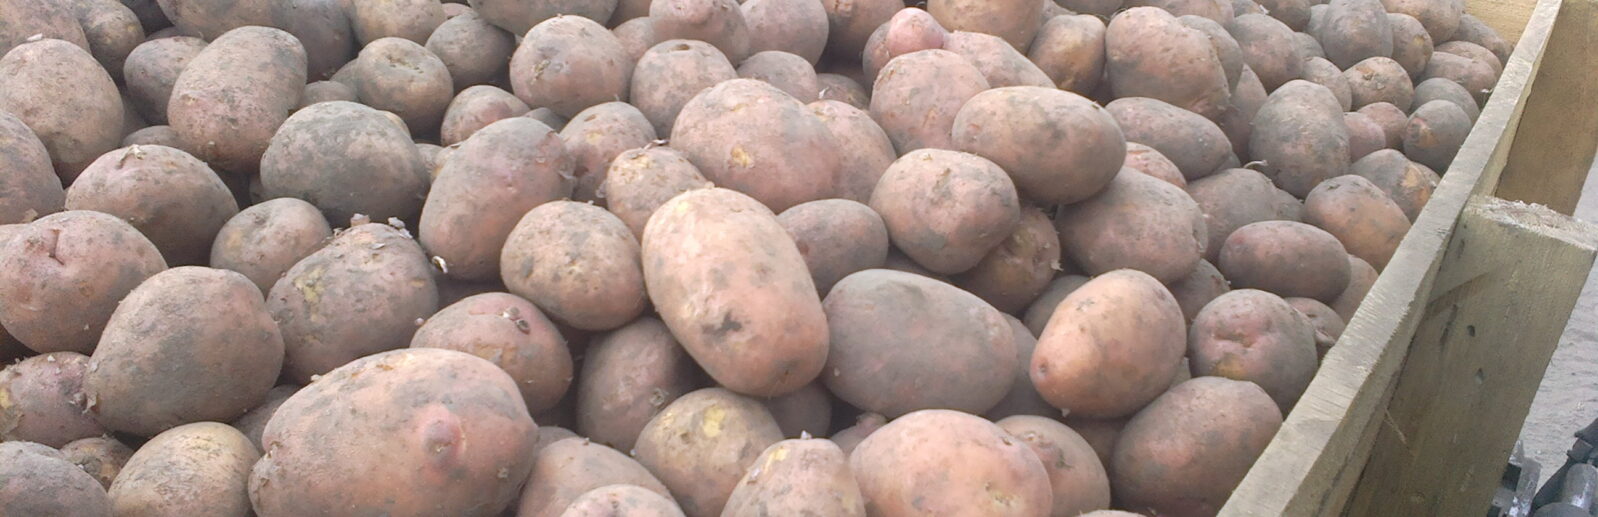 Купить картофель в Крыму